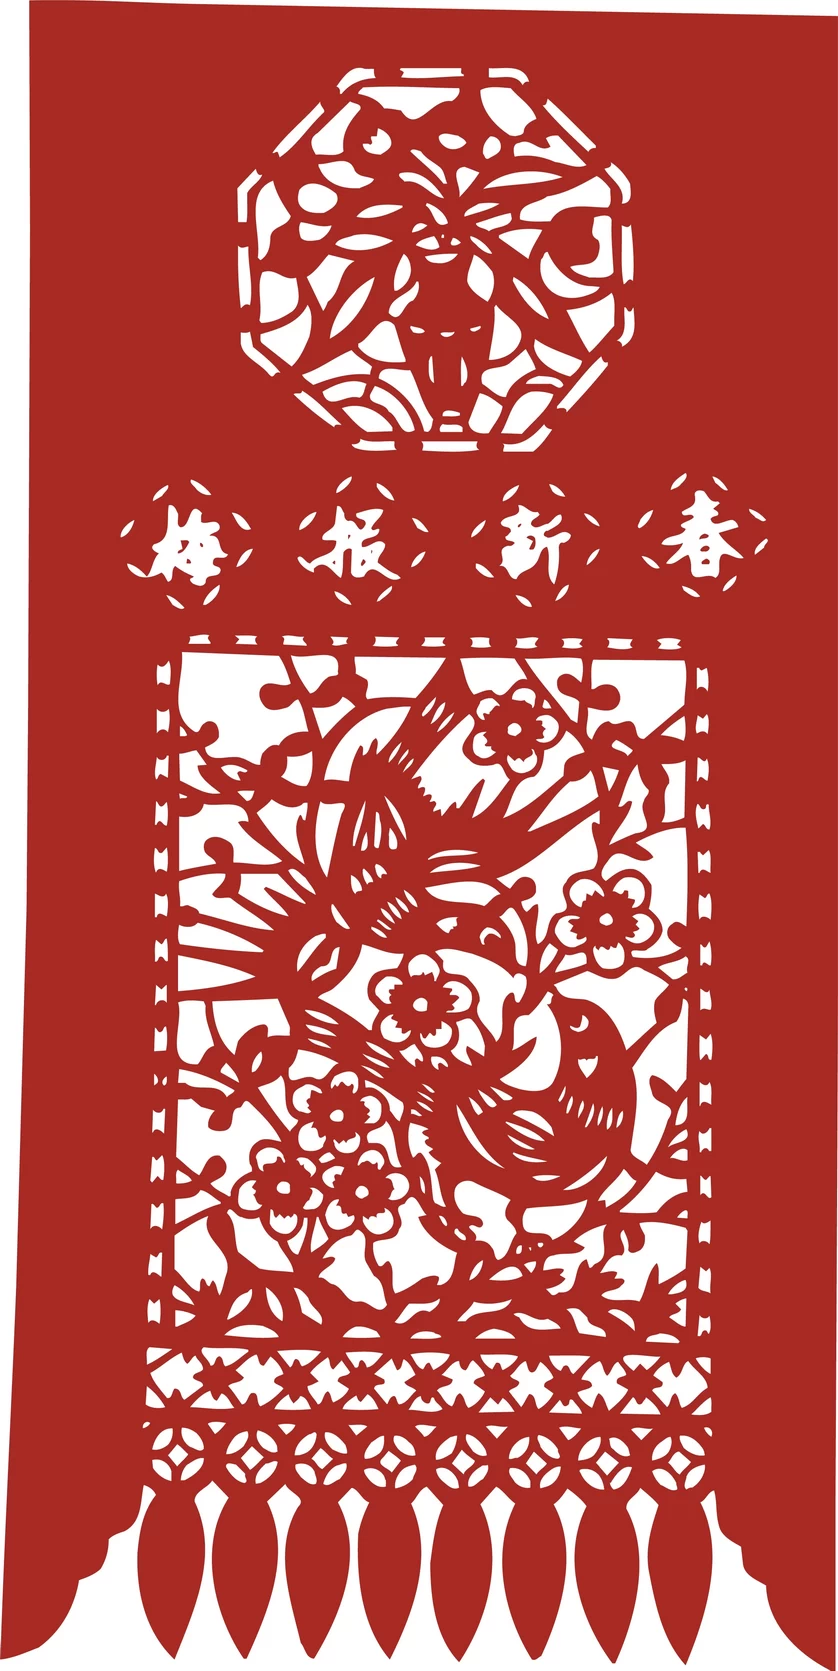 中国风中式传统喜庆民俗人物动物窗花剪纸插画边框AI矢量PNG素材【1973】